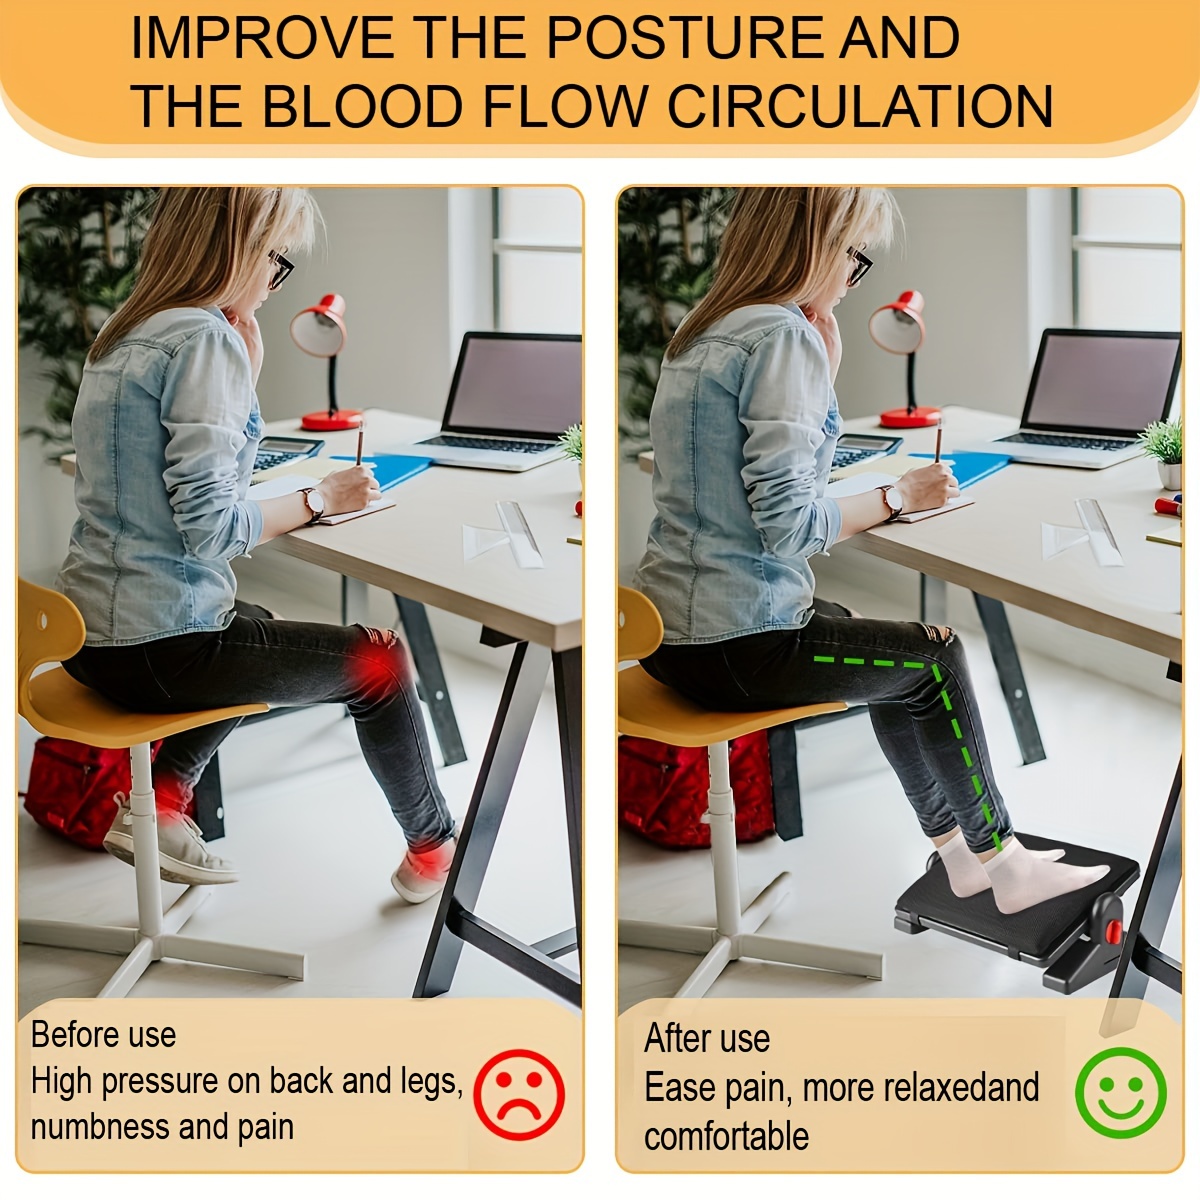 Adjustable Under Desk Footrest Ergonomic Foot Rest with Removable Sponge  Cushion